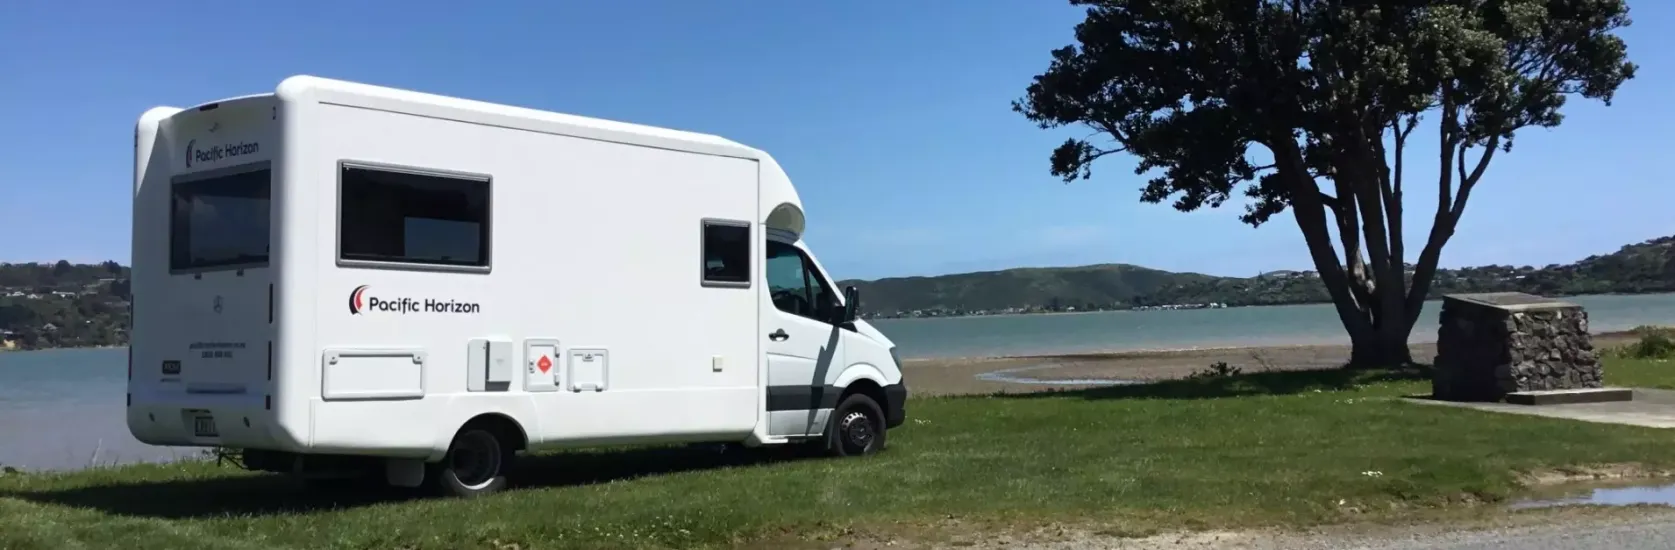 Pacific Horizon Wohnmobil, parkend an einem See in Neuseeland